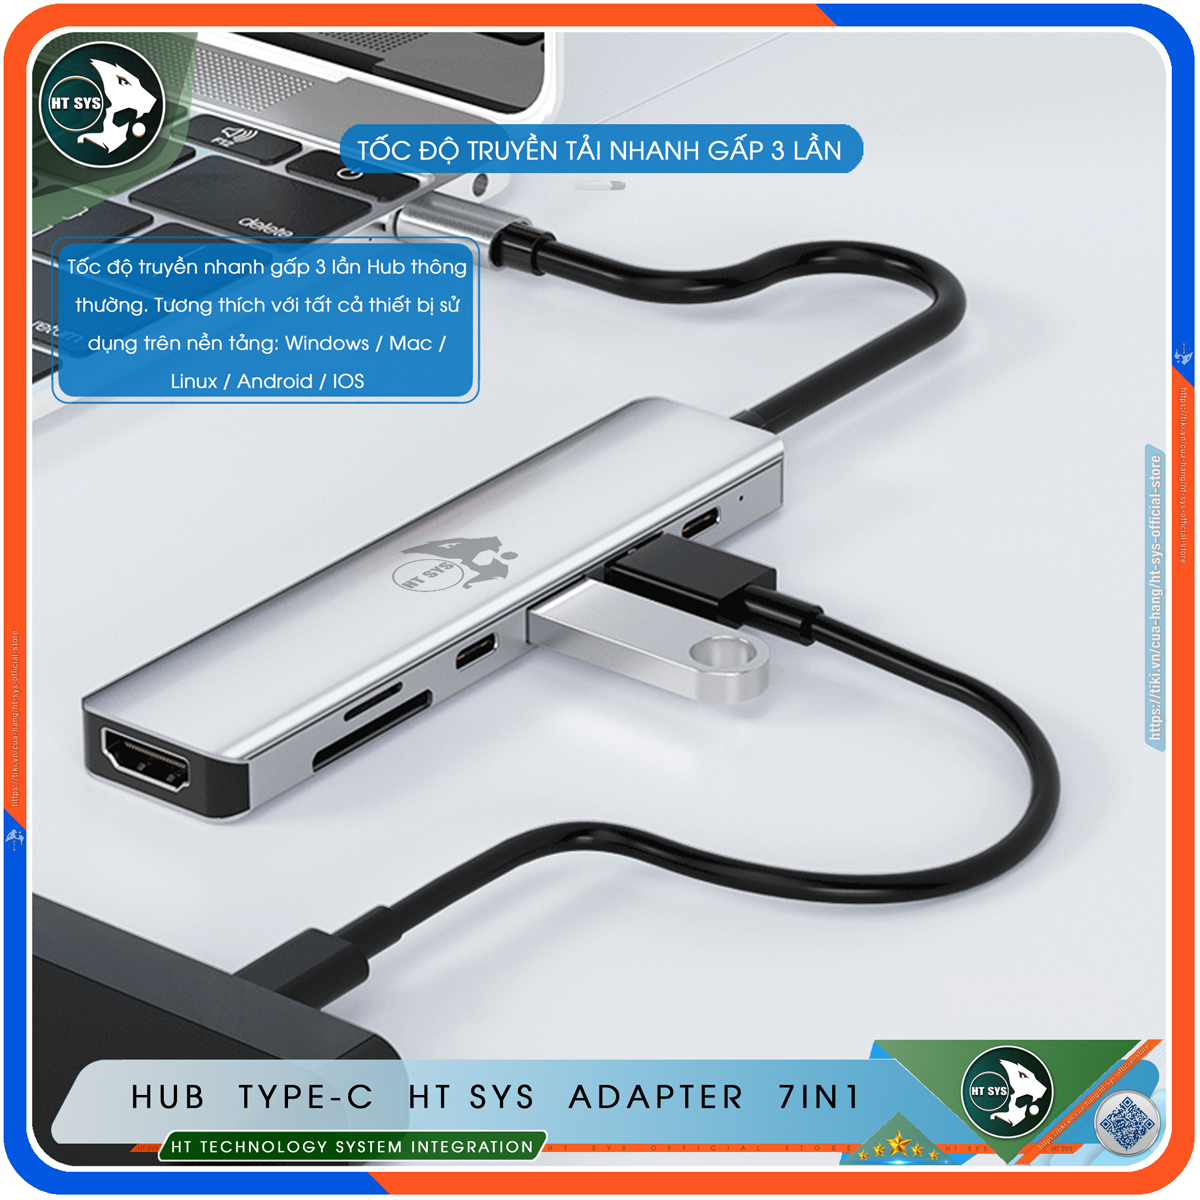 Hub Type C To HDMI HT SYS 7in1 Chuẩn HDTV - Hub Chuyển Đổi USB Type-C 7 Cổng - HDMI 4K, USB 3.0, USB-C, Sạc Nhanh Type C PD, Khe Đọc Thẻ SD/TF - Kết Nối Tốc Độ Cao - Dành Cho MacBook, Tivi, Laptop, PC, Máy Tính Bảng, Smartphone – Hàng Chính Hãng